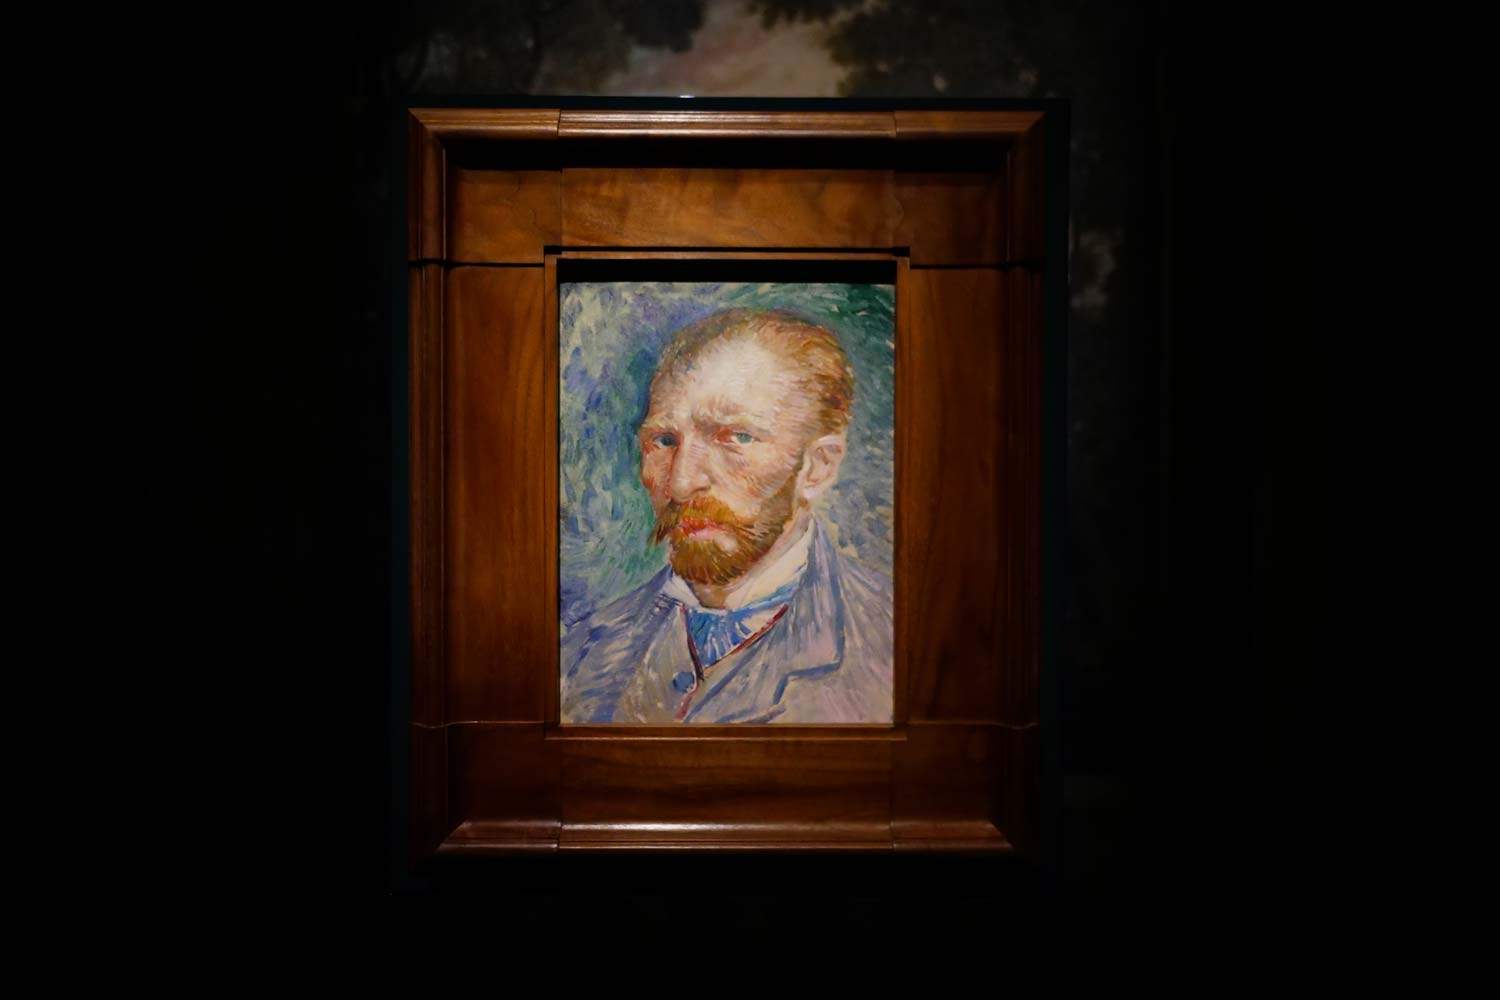 L'exposition Van Gogh à Rome ferme ses portes avec des chiffres incroyables : près de 600 000 visiteurs